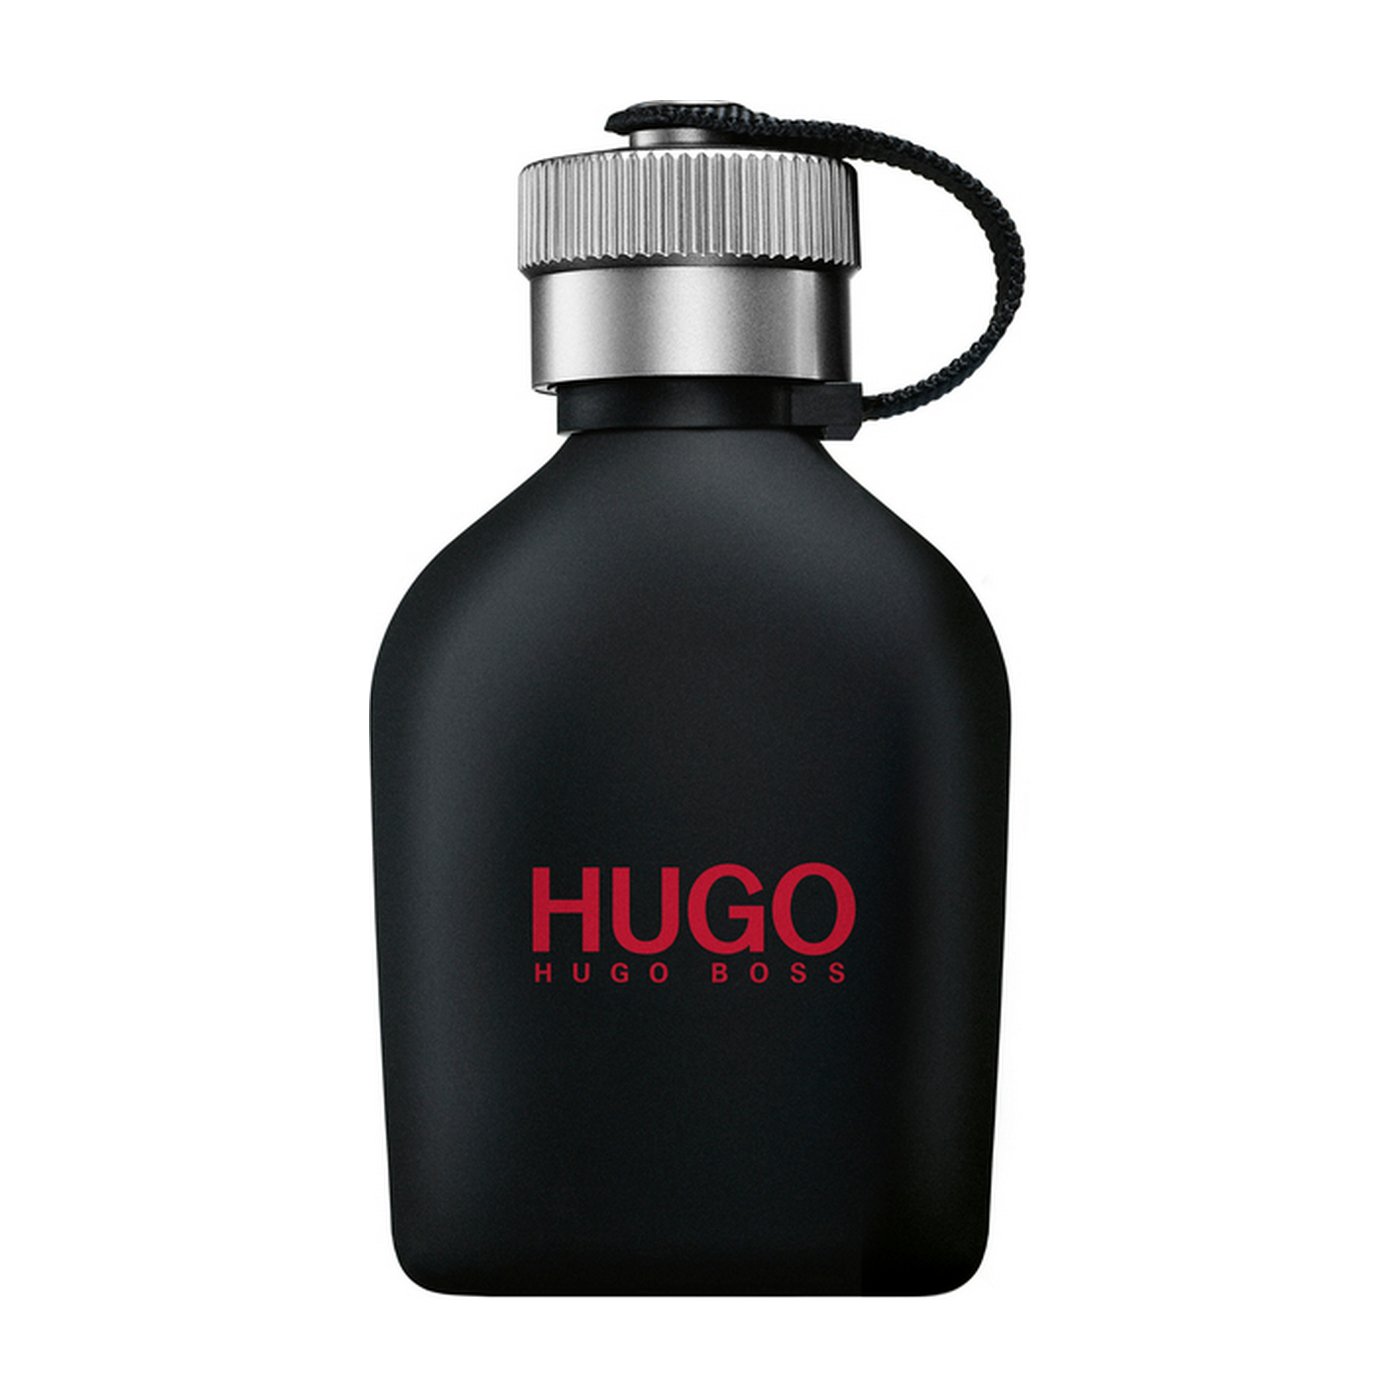 Хуго босс описание. Hugo "Hugo Boss just different" 100 ml. Hugo Boss "Hugo just different" EDT, 100ml. Hugo Boss Hugo just different [m] EDT - 125ml. Hugo Boss Hugo men 100 мл.